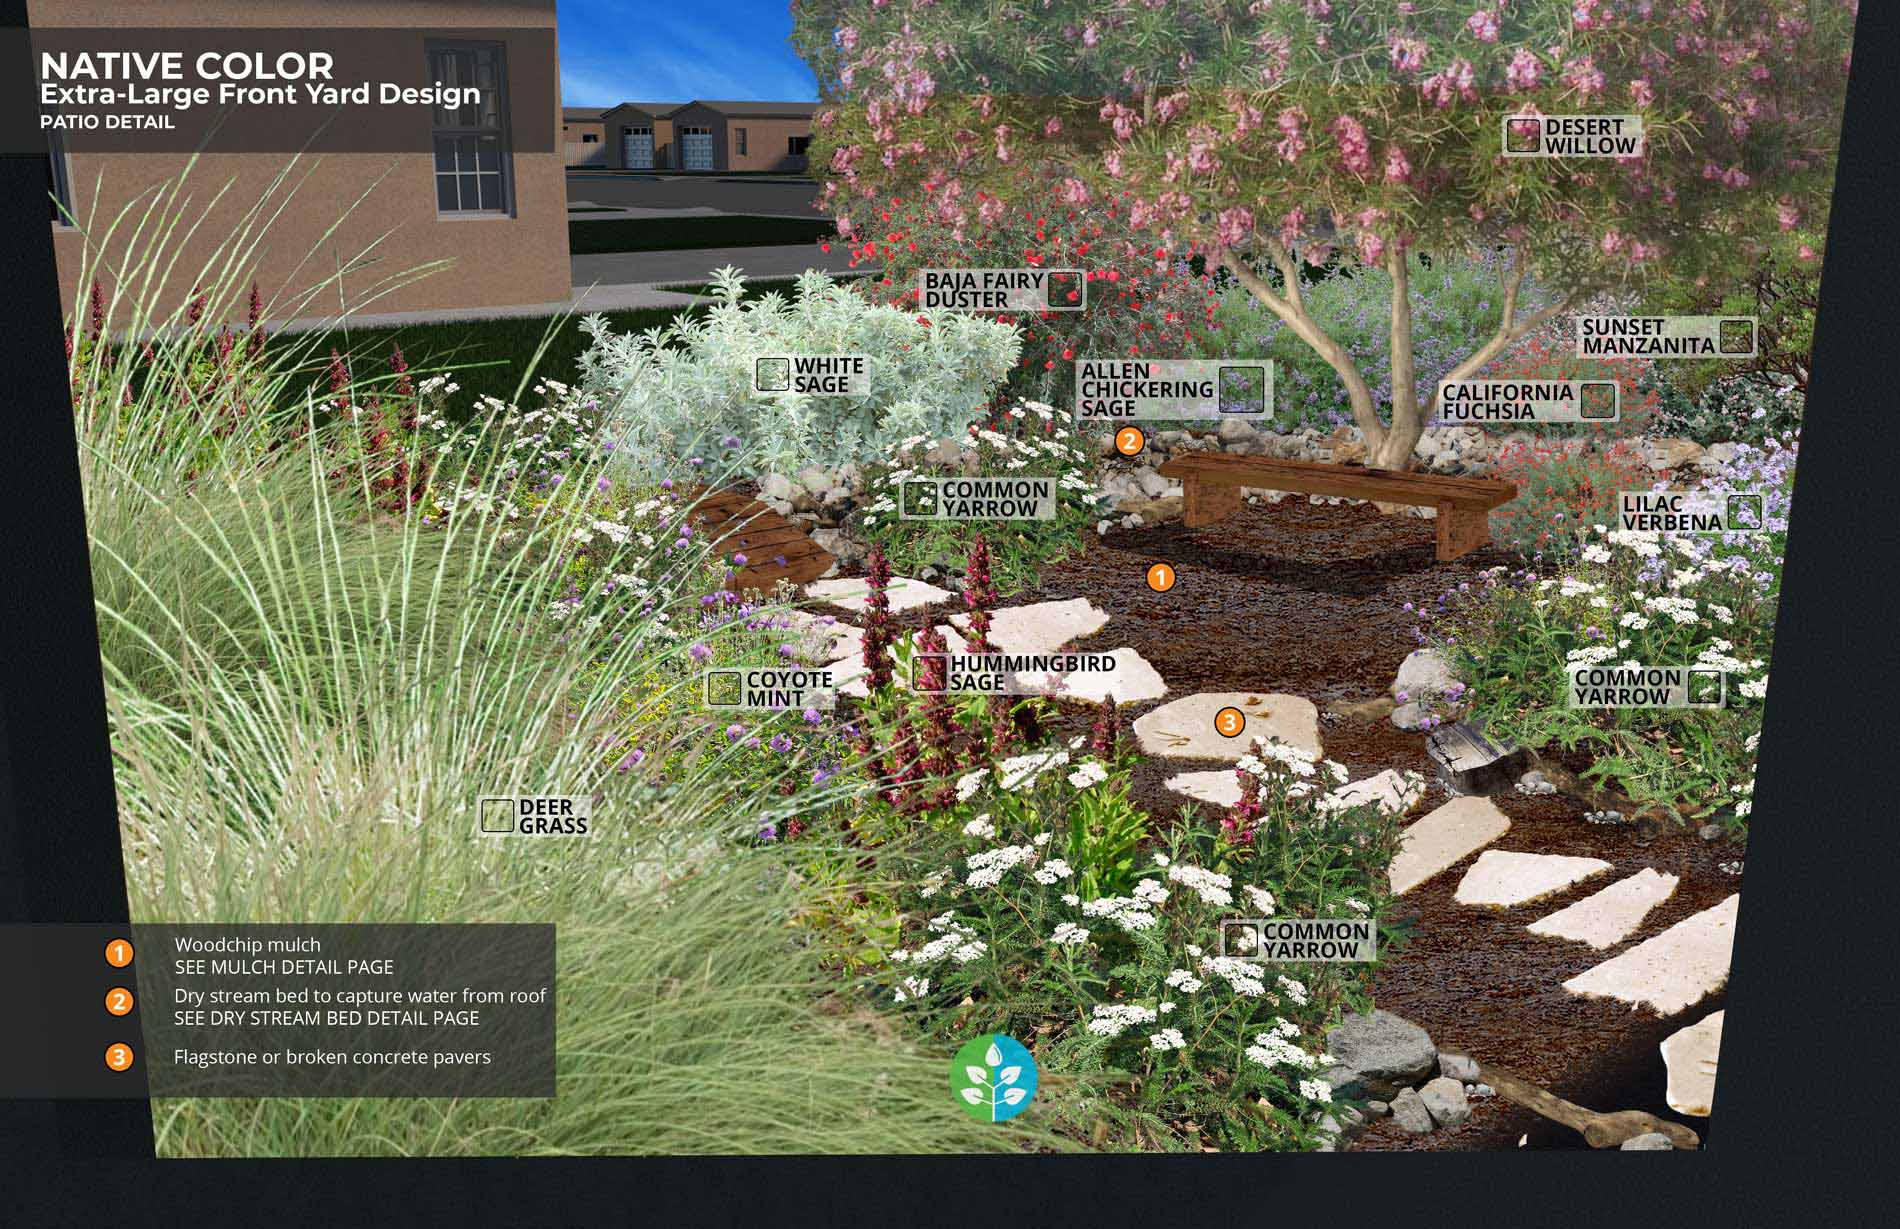 California-Native-Color-garden-XL-patio.jpg